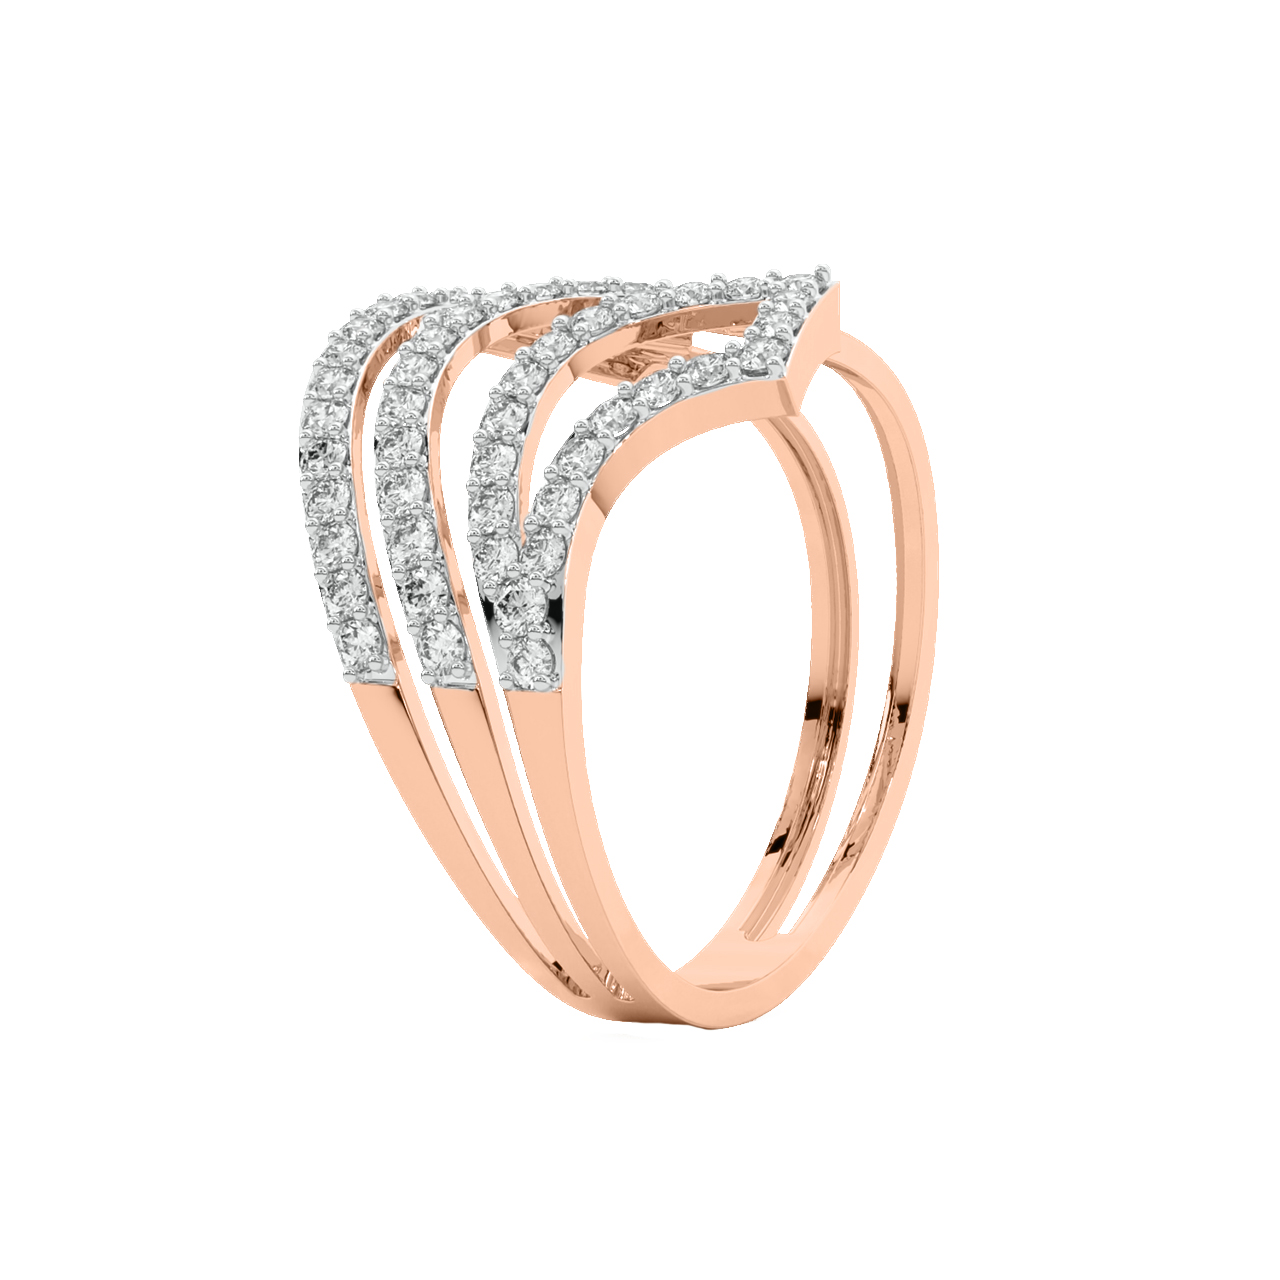 Kairo Round Diamond Engagement Ring